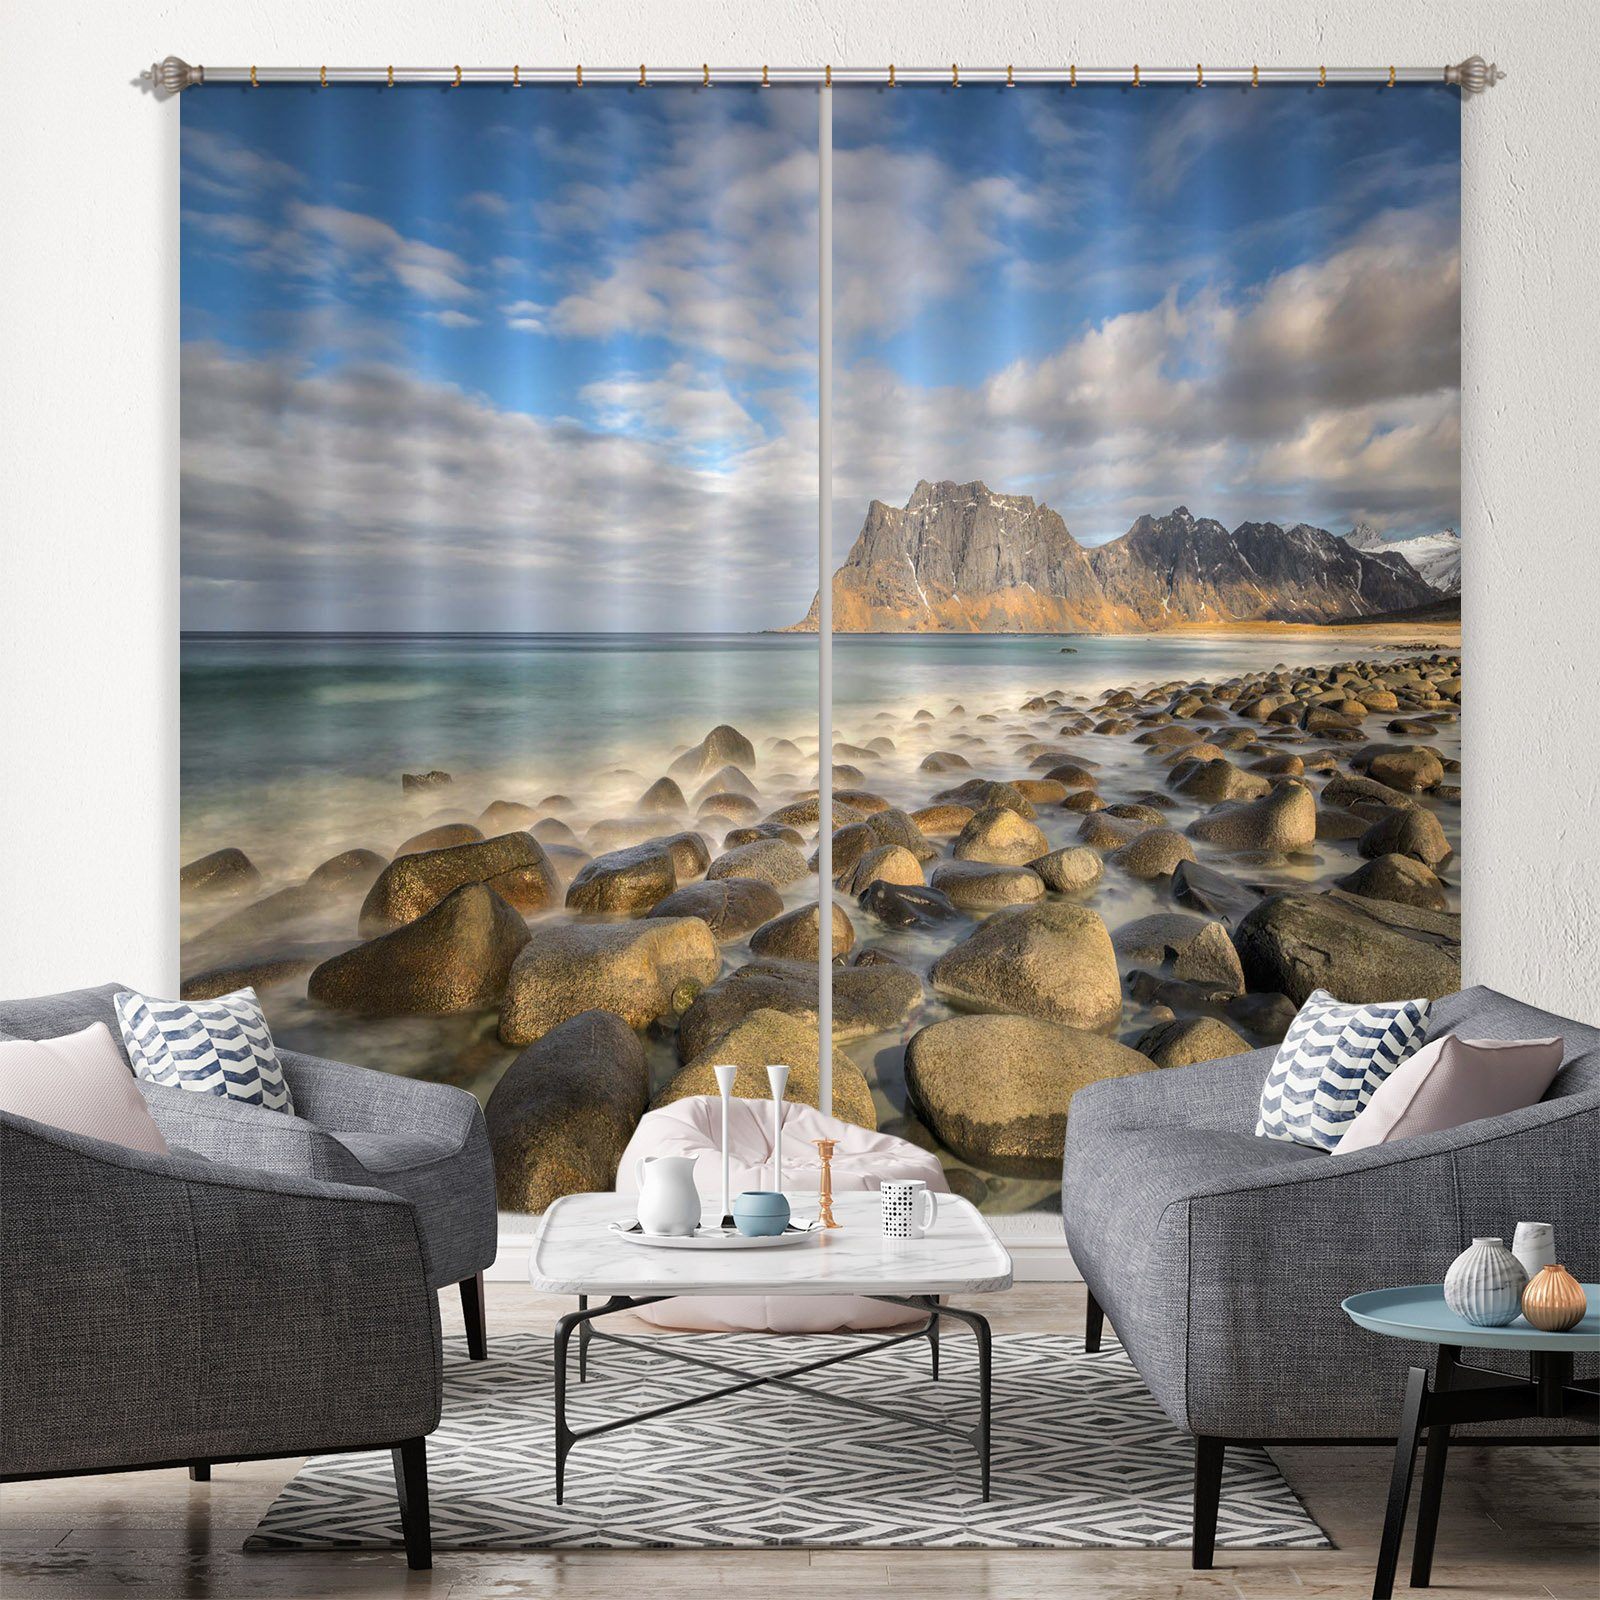 3D Beach Stones 168 Marco Carmassi Curtain Curtains Drapes Curtains AJ Creativity Home 